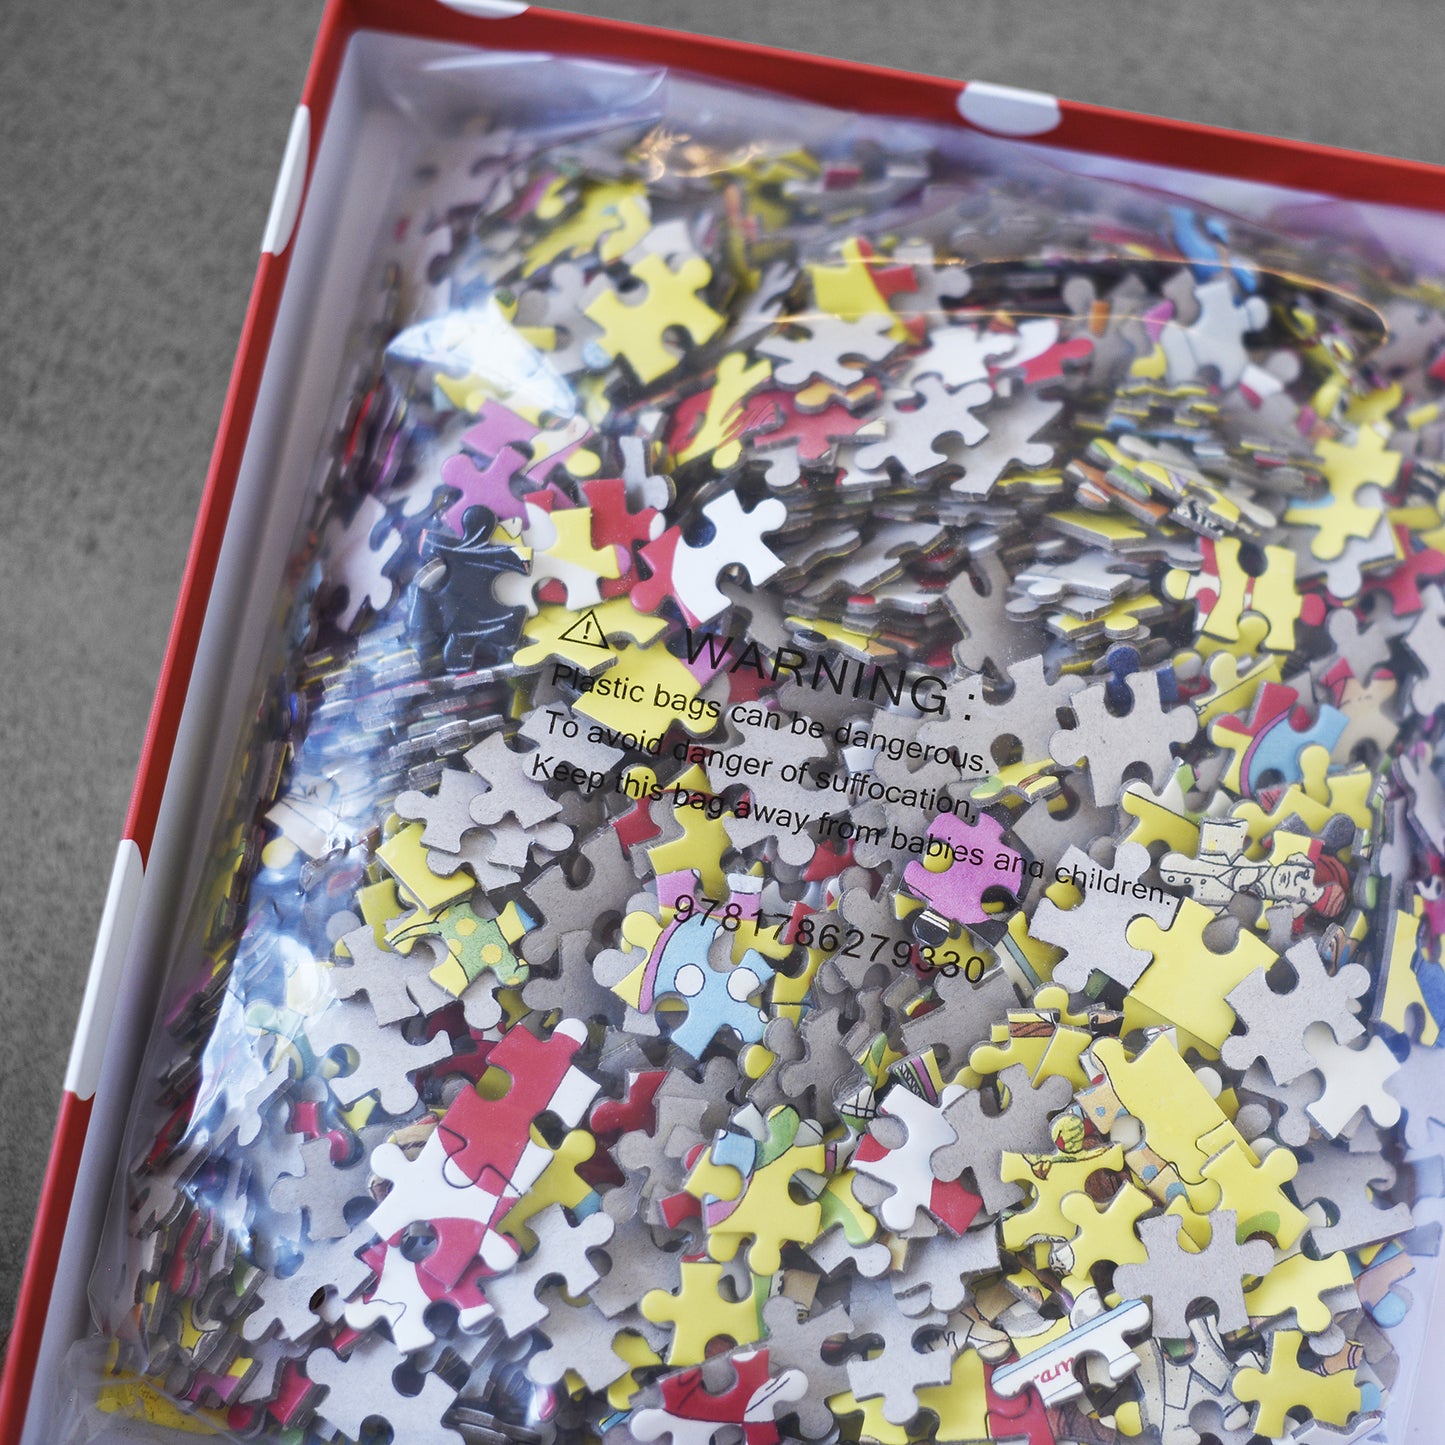 The World of Yayoi Kusama: A Jigsaw Puzzle